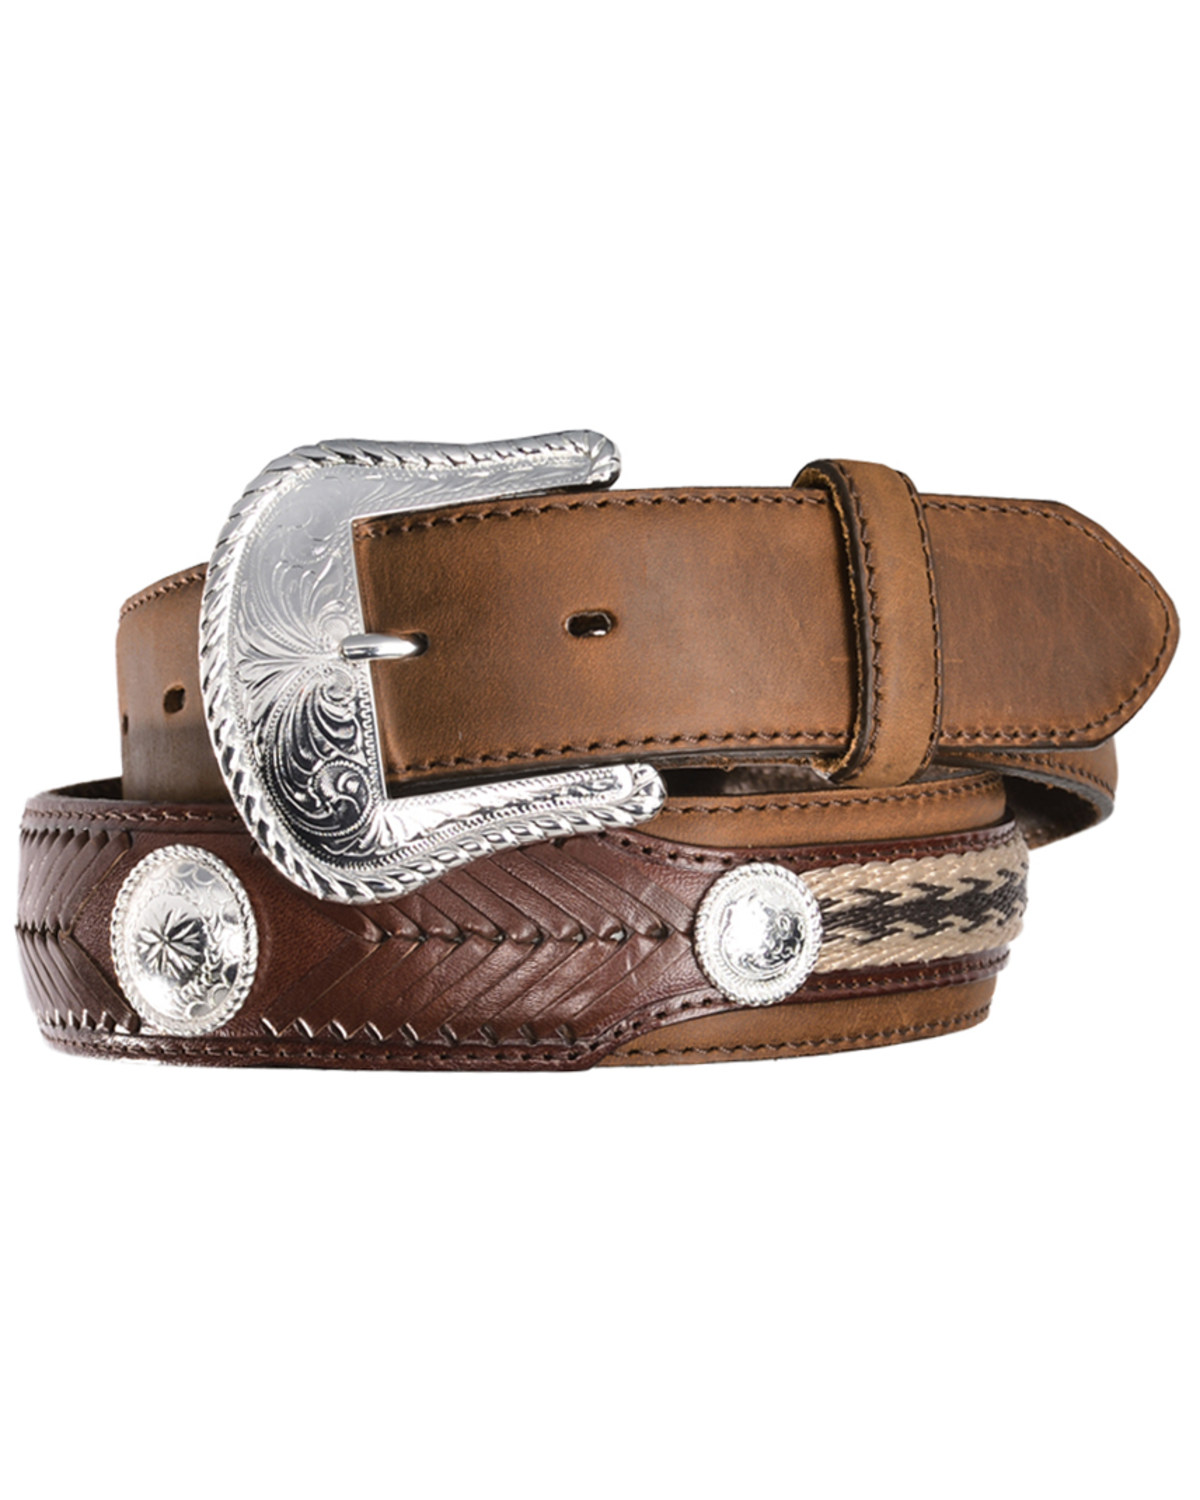 Tony Lama Duke Leather Belt